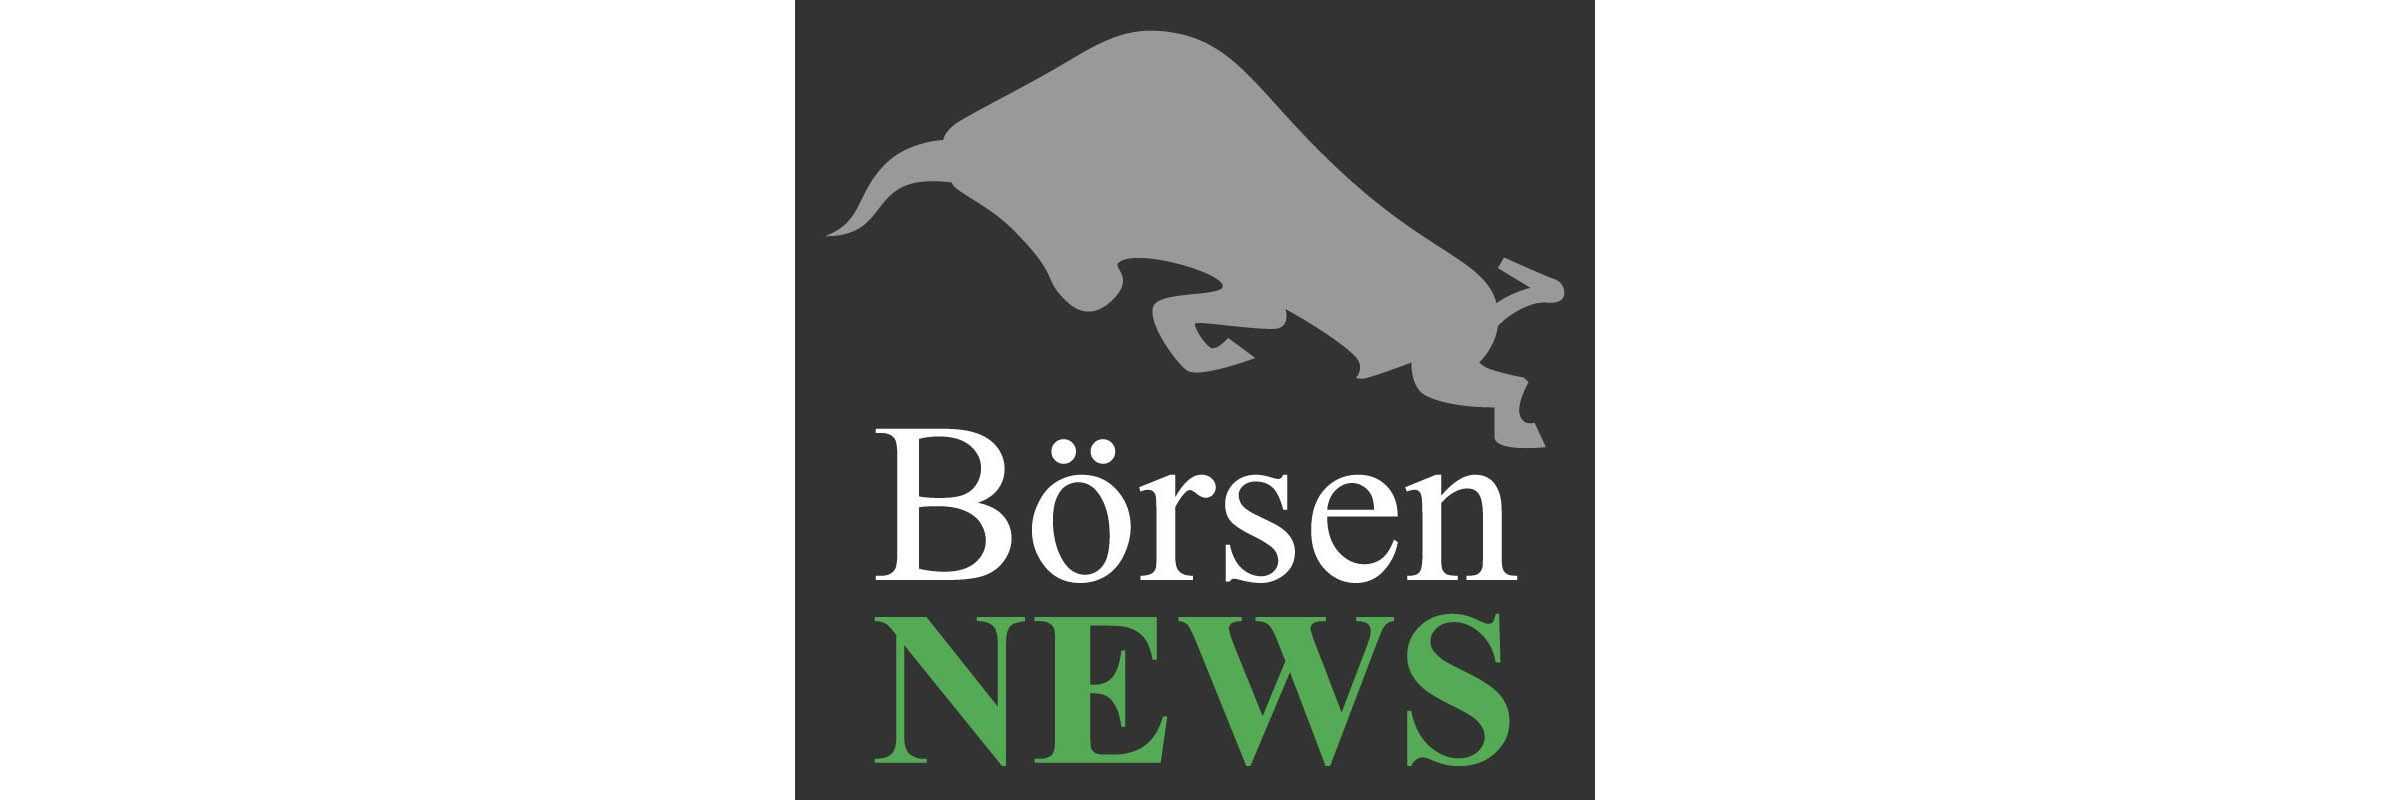 boersen-news.jpeg